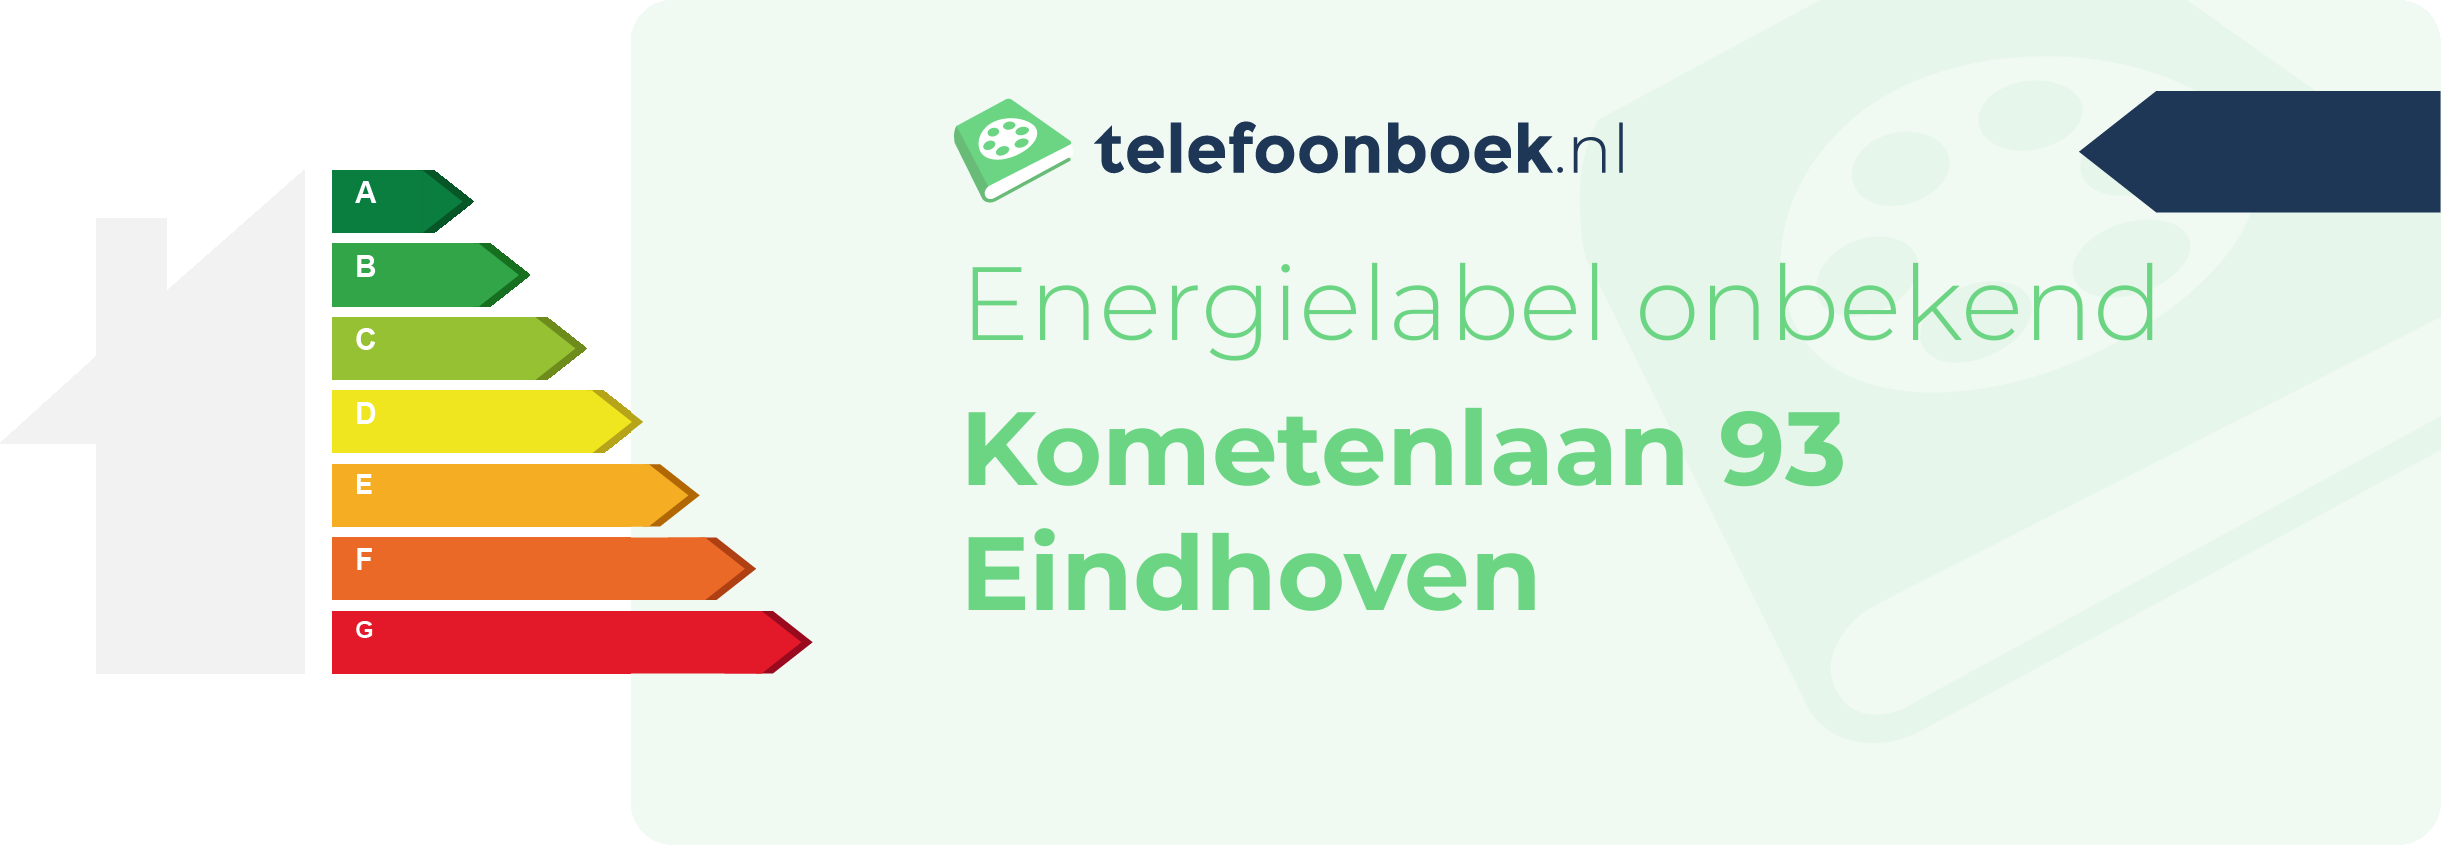 Energielabel Kometenlaan 93 Eindhoven